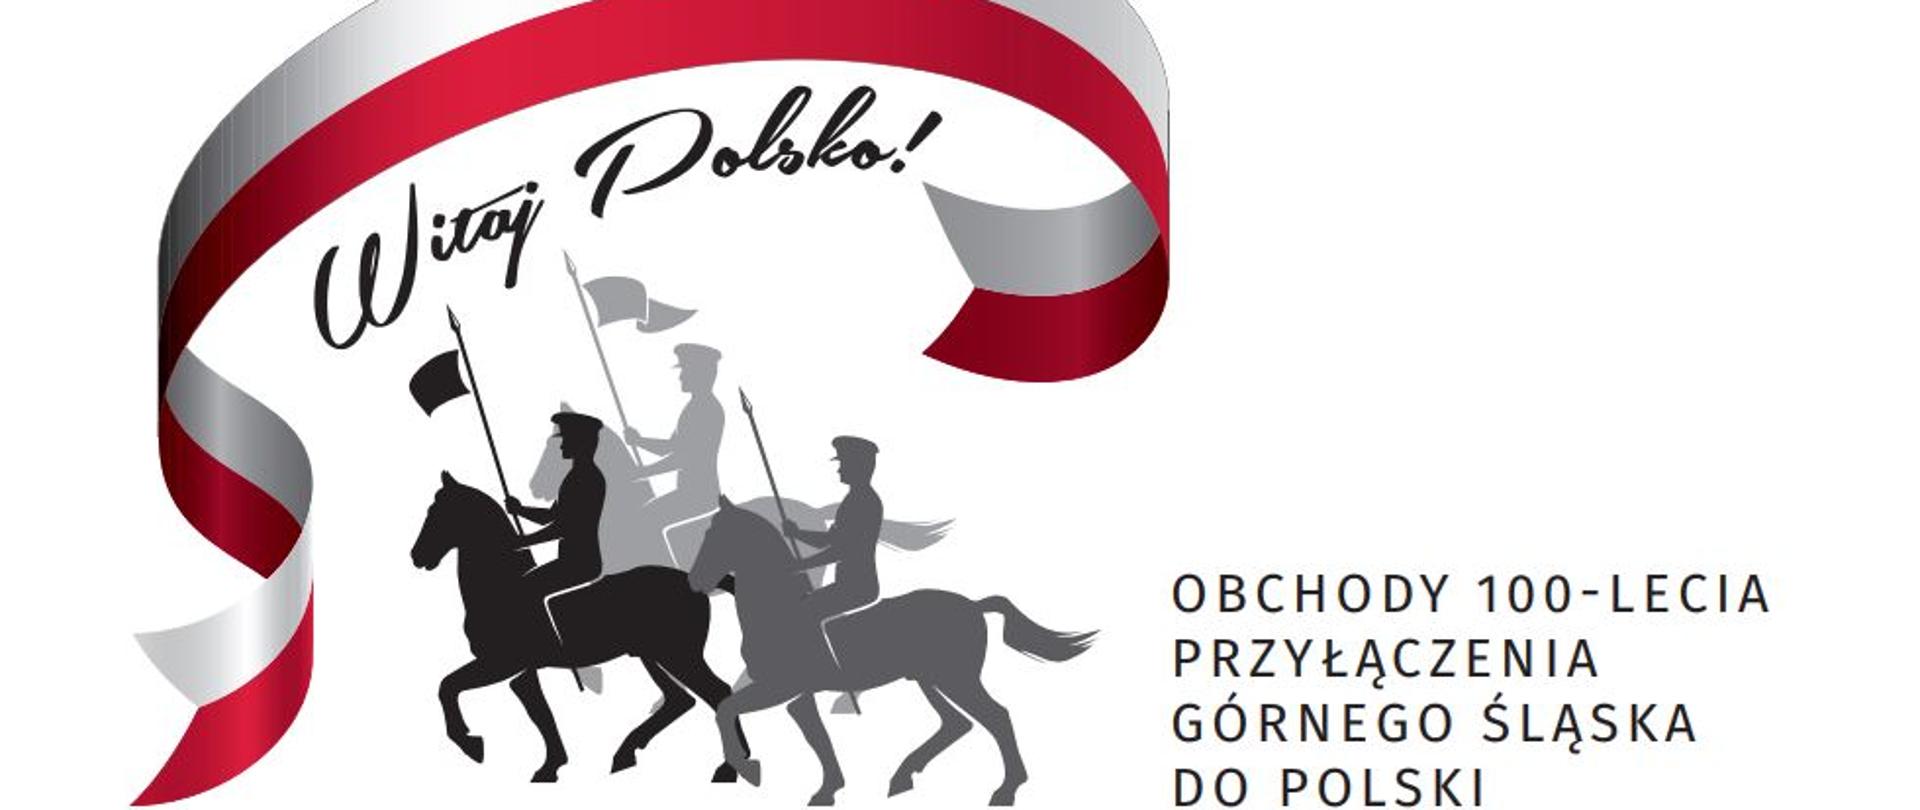 Obchody 100-lecia przyłączenia Górnego Śląska do Polski